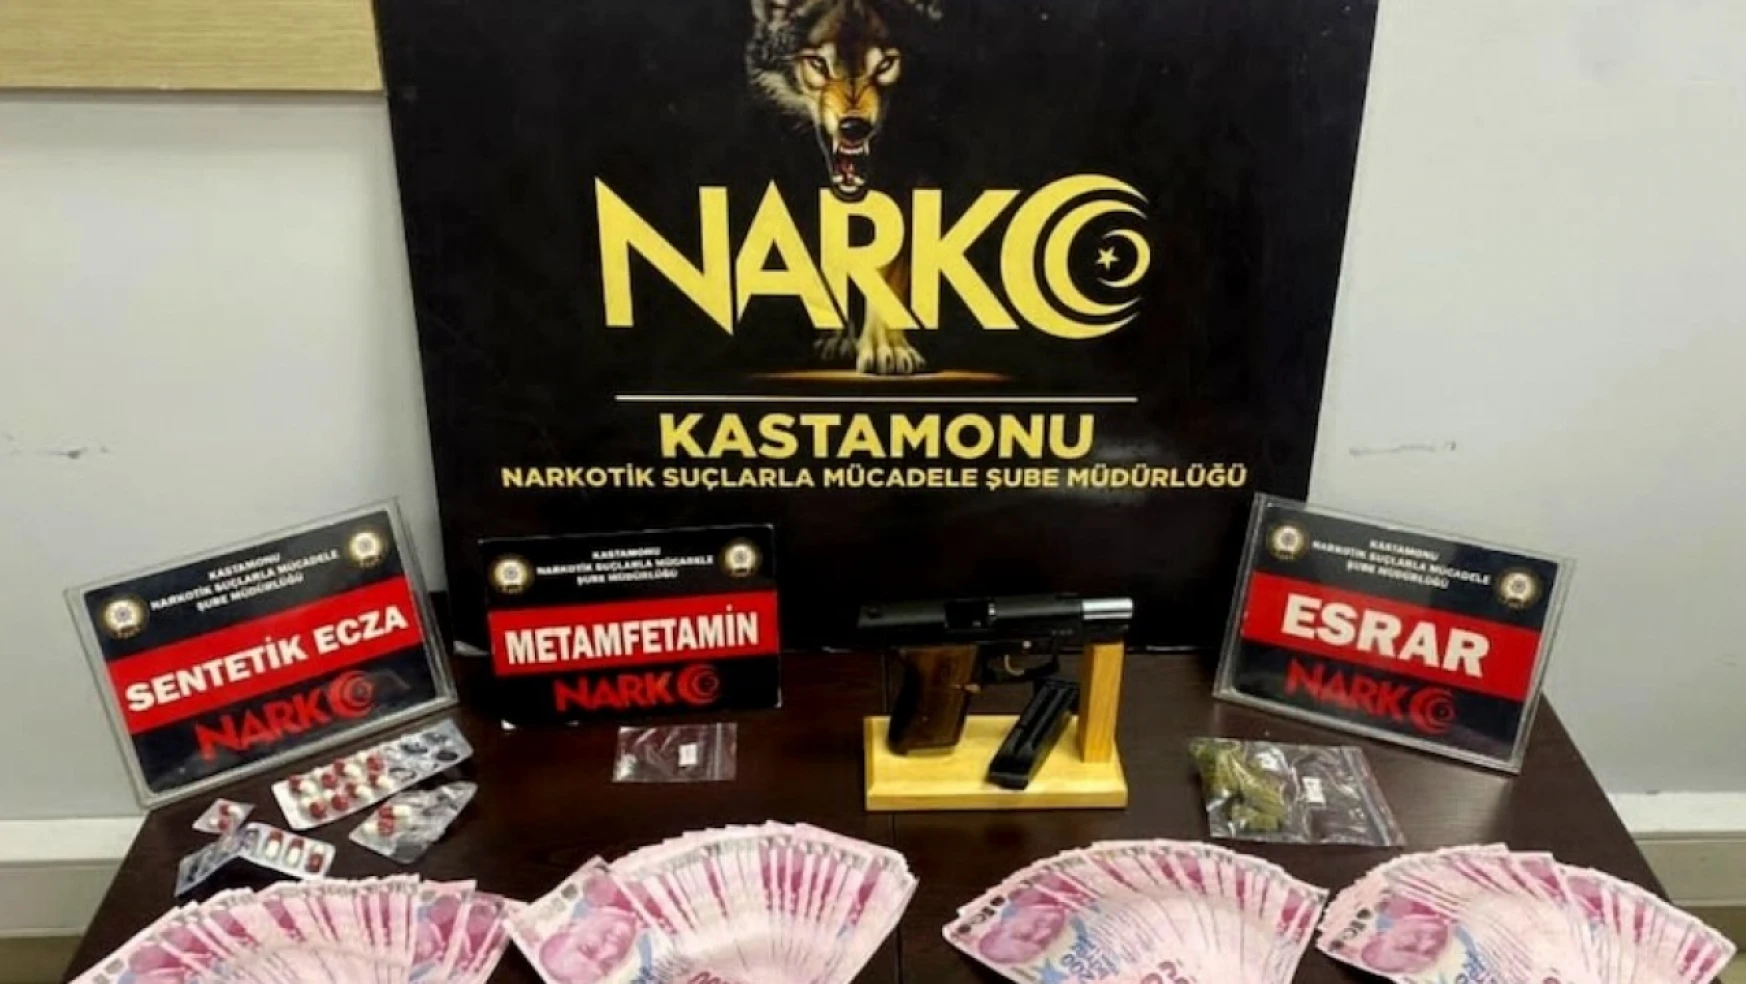 Kastamonu'da uyuşturucu operasyonu: 3 gözaltı